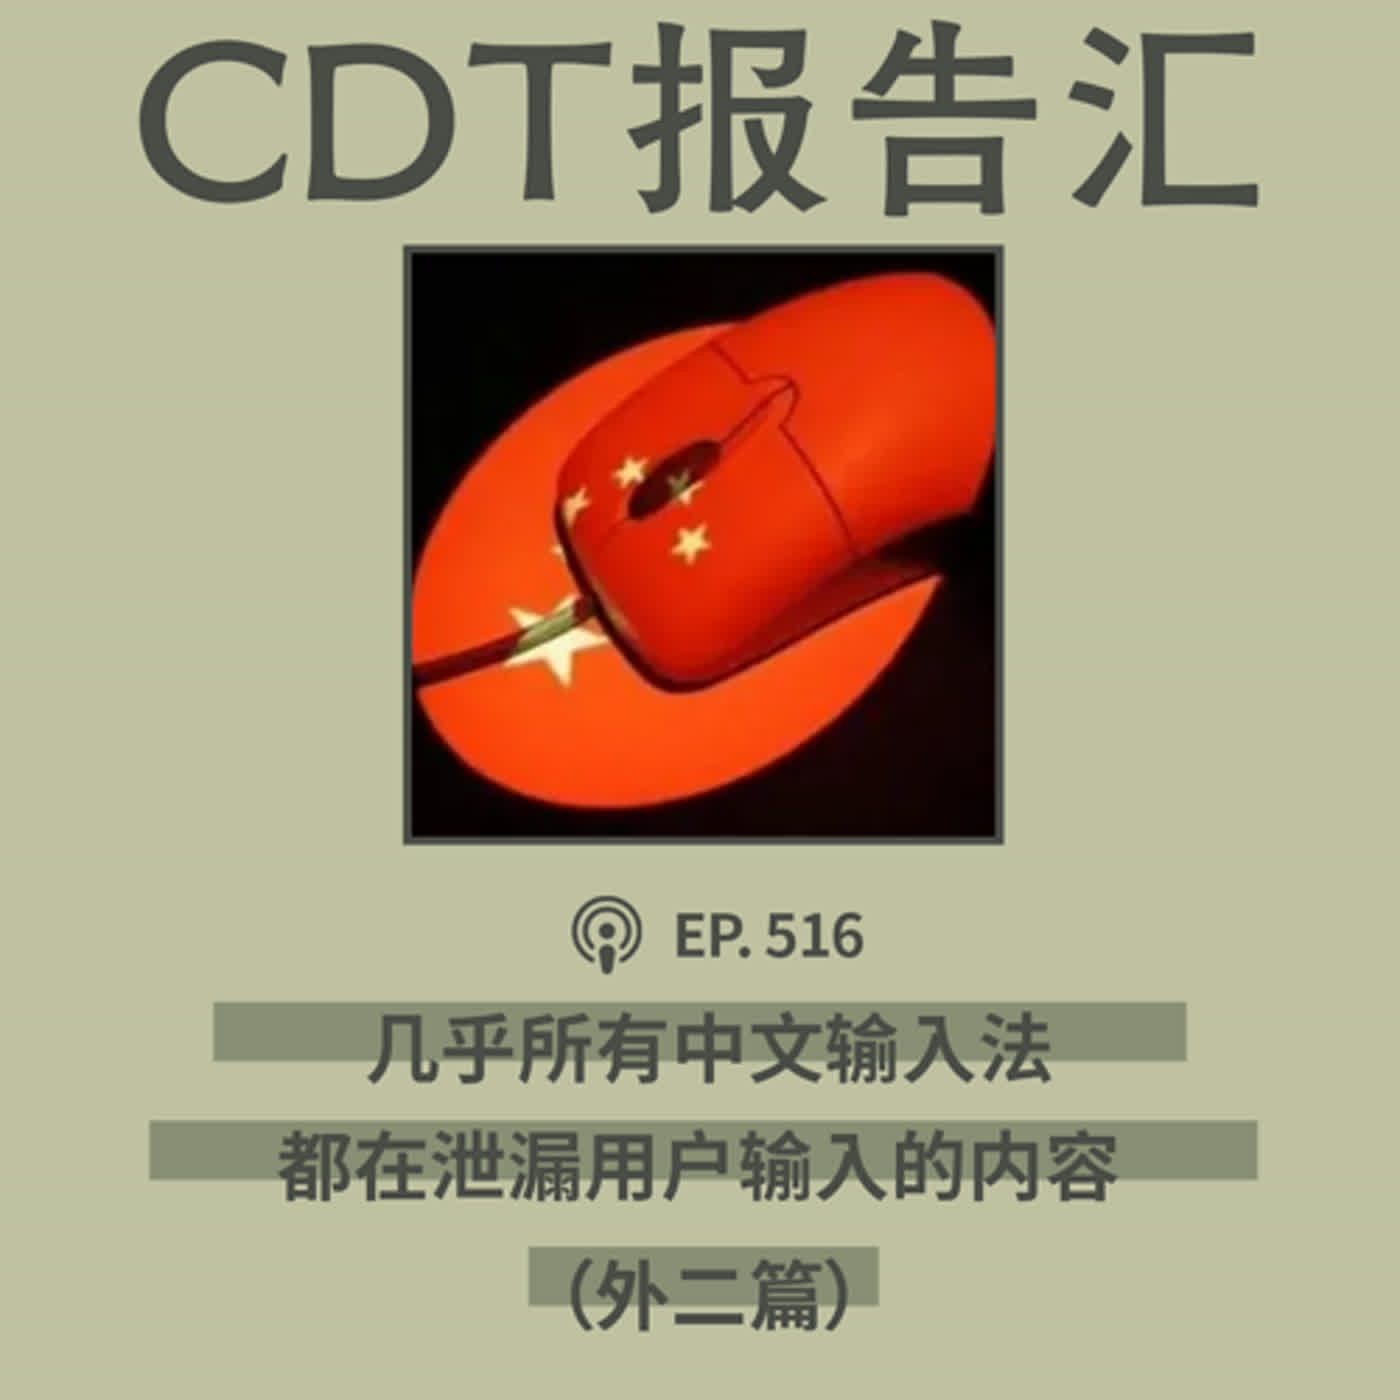 【第516期】CDT报告汇：公民实验室：几乎所有中文输入法都会泄露输入的内容（外二篇）